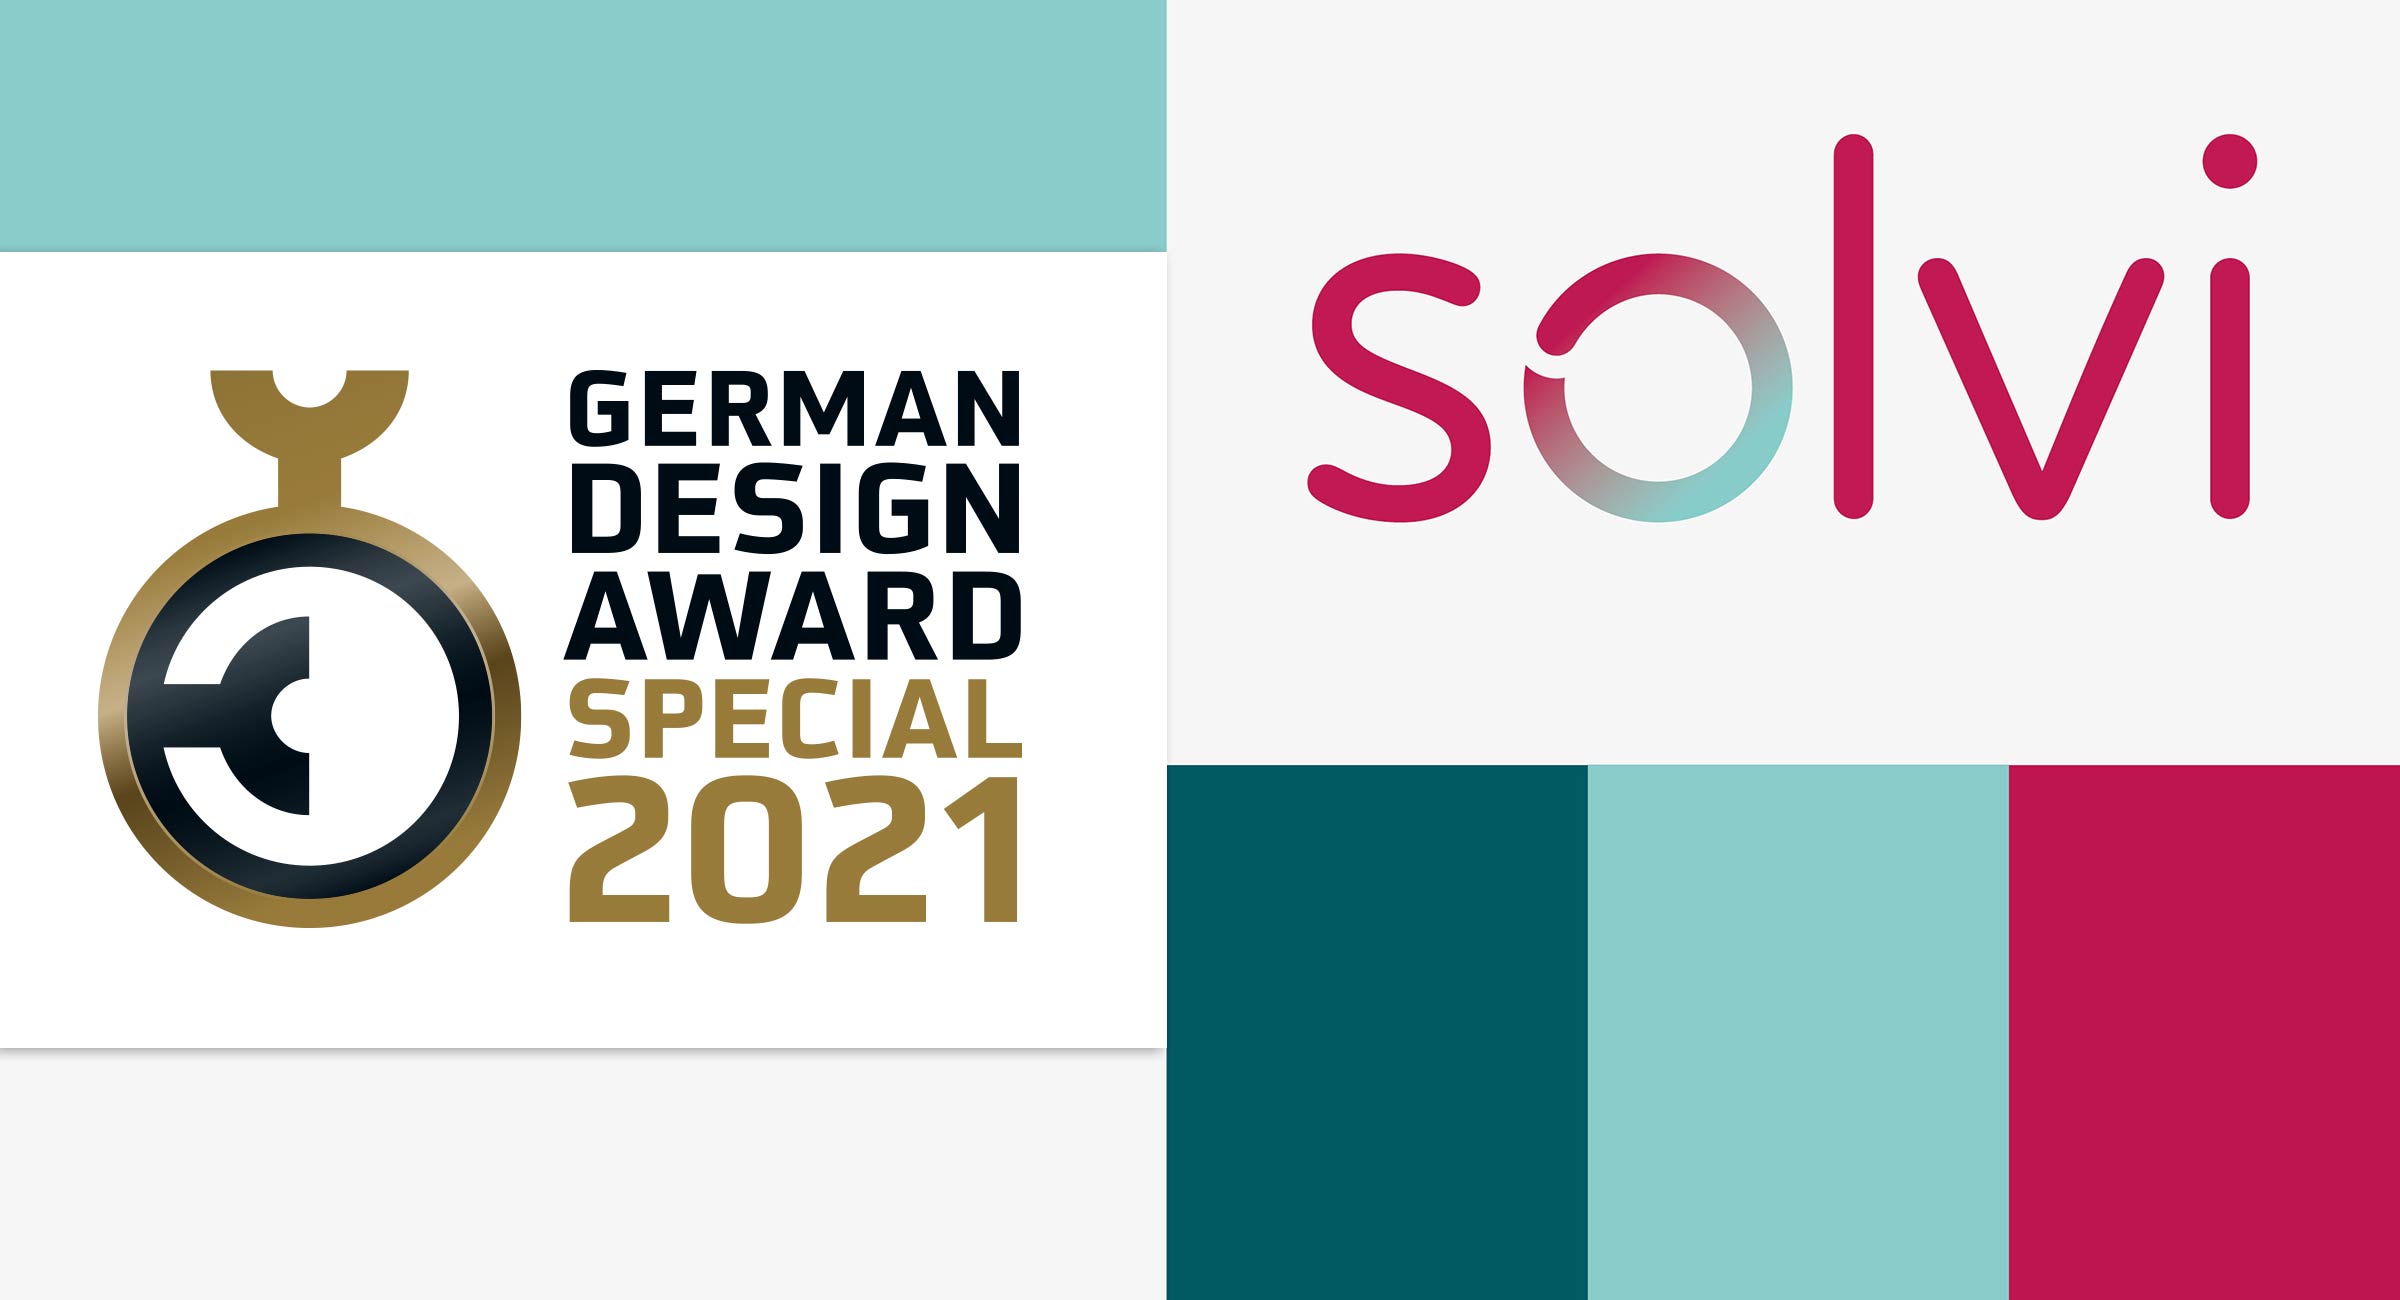 German Design Award Solvi Winner